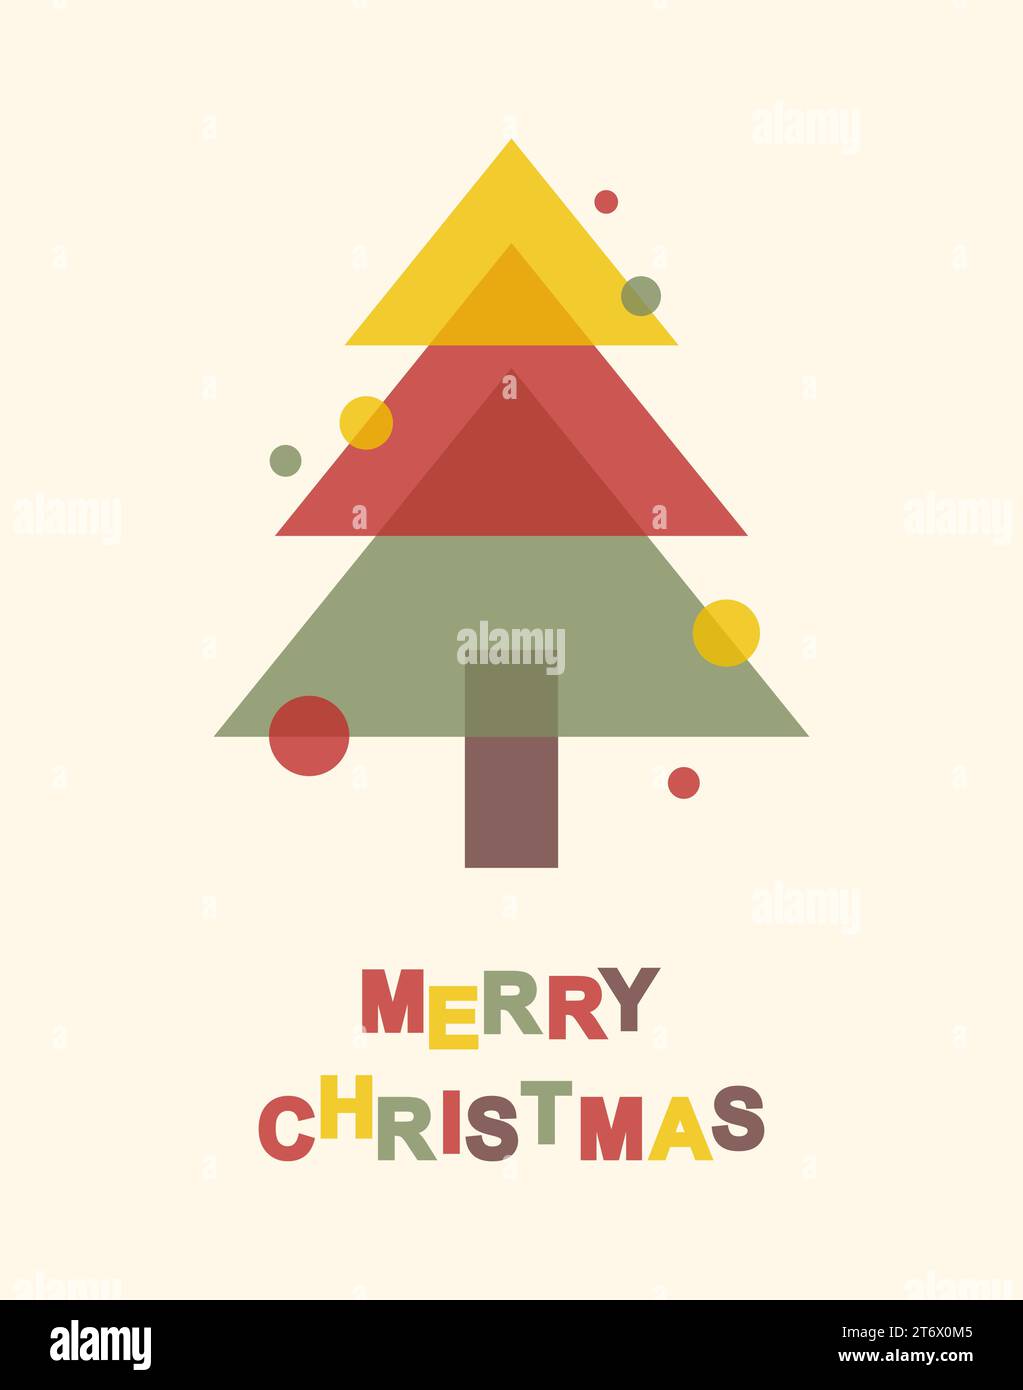 Biglietto d'auguri di Natale. Albero di Natale multicolore con decorazioni e testo di buon Natale. Illustrazione vettoriale piatta in stile risografico Illustrazione Vettoriale